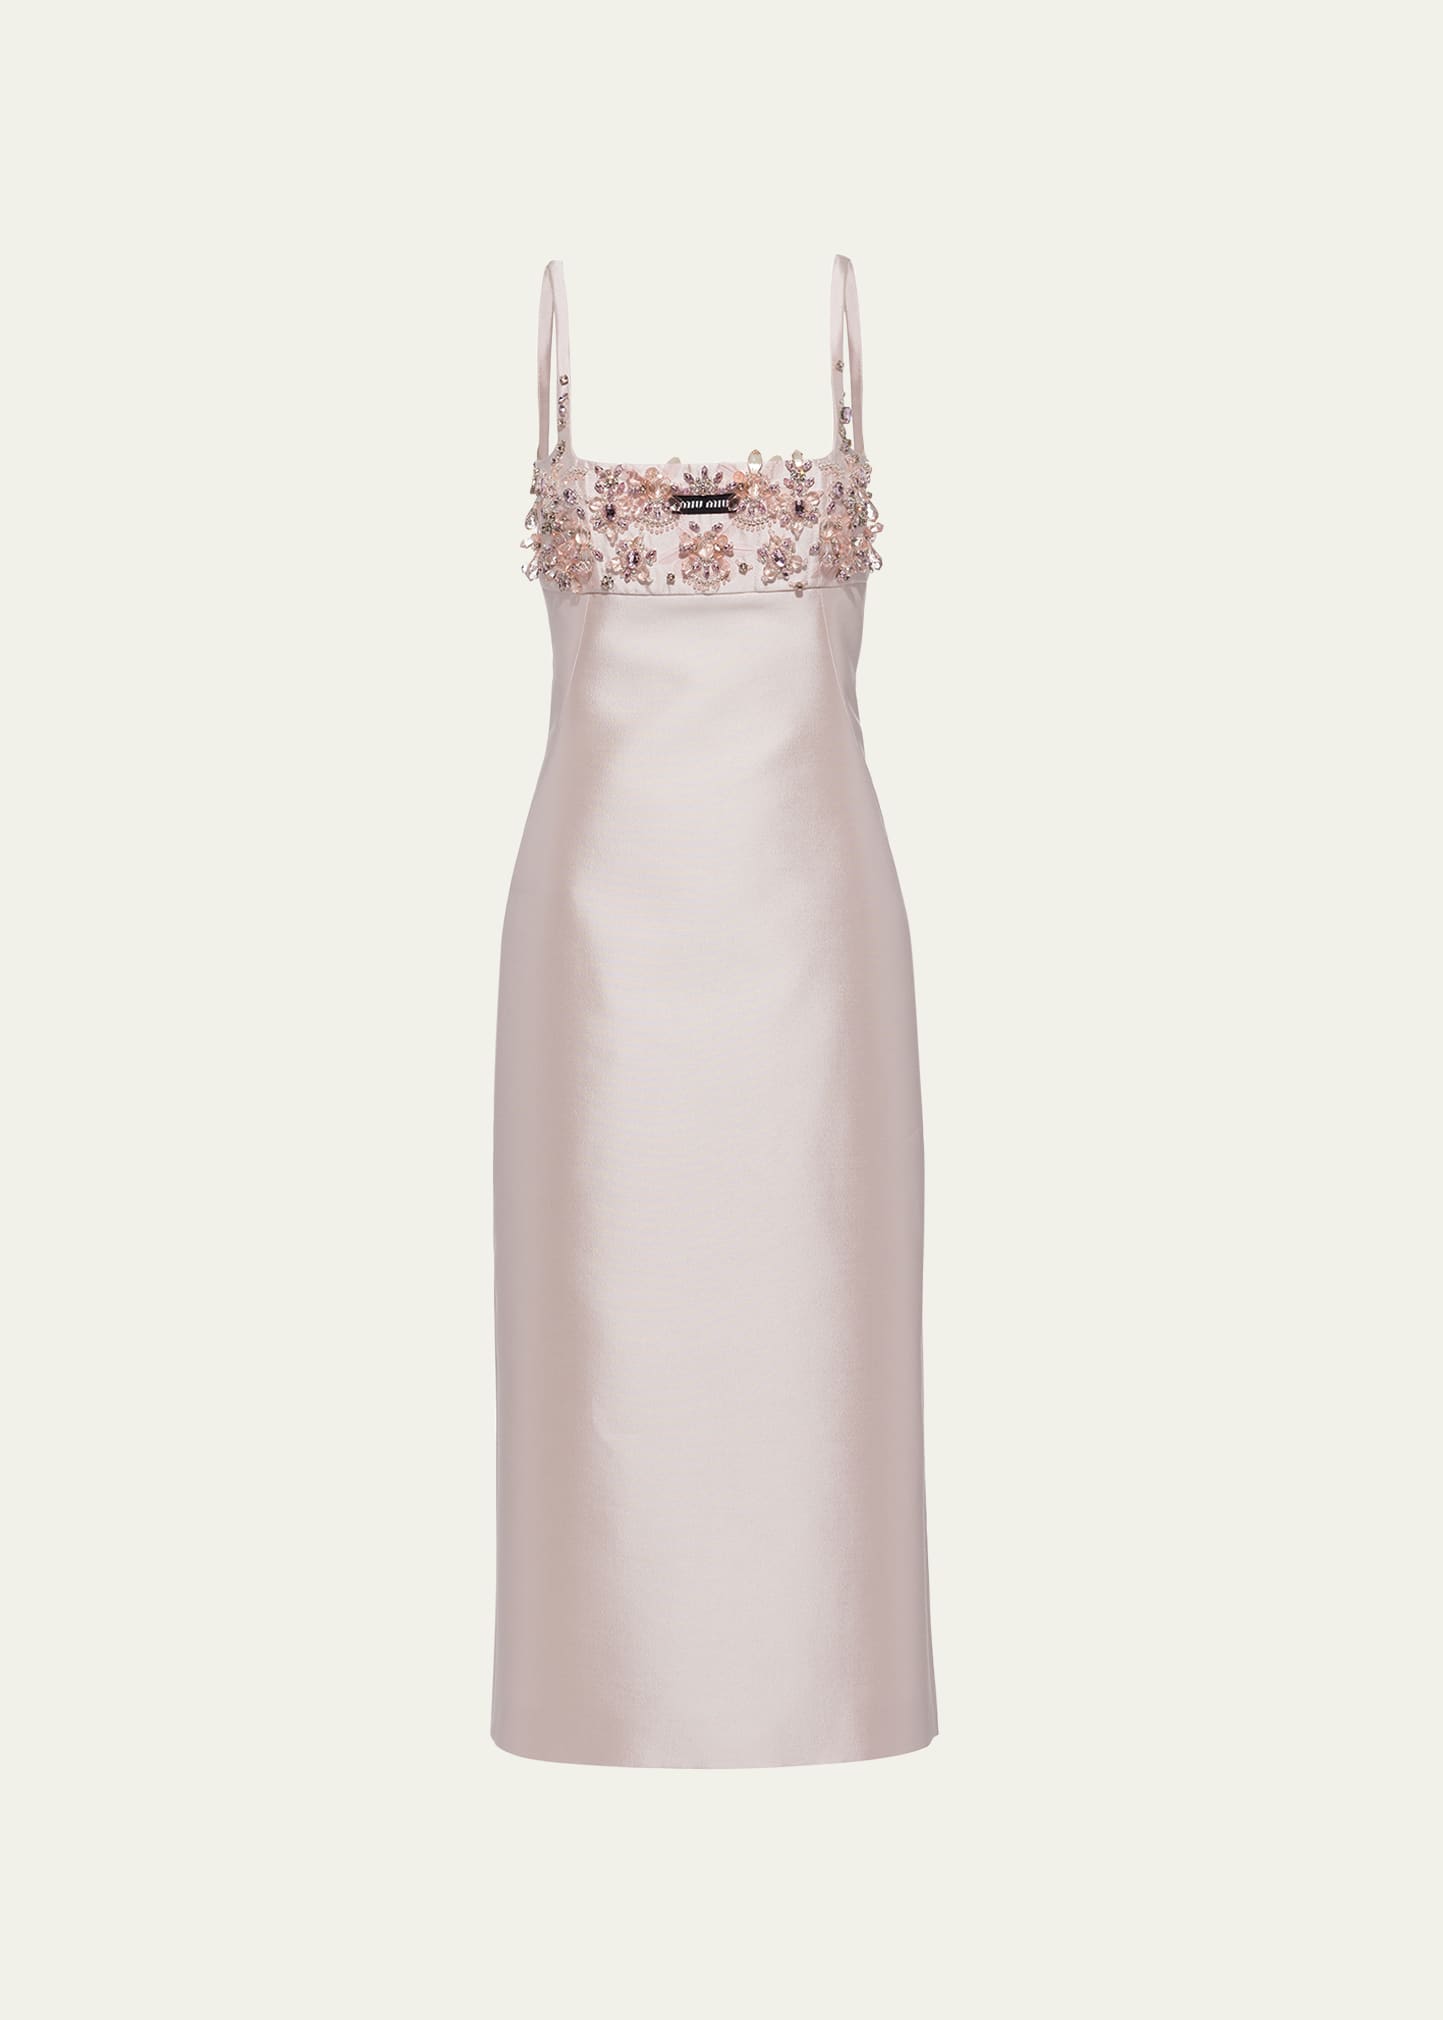 Miu Miu crystal-embellished Bow Mini Dress - Farfetch